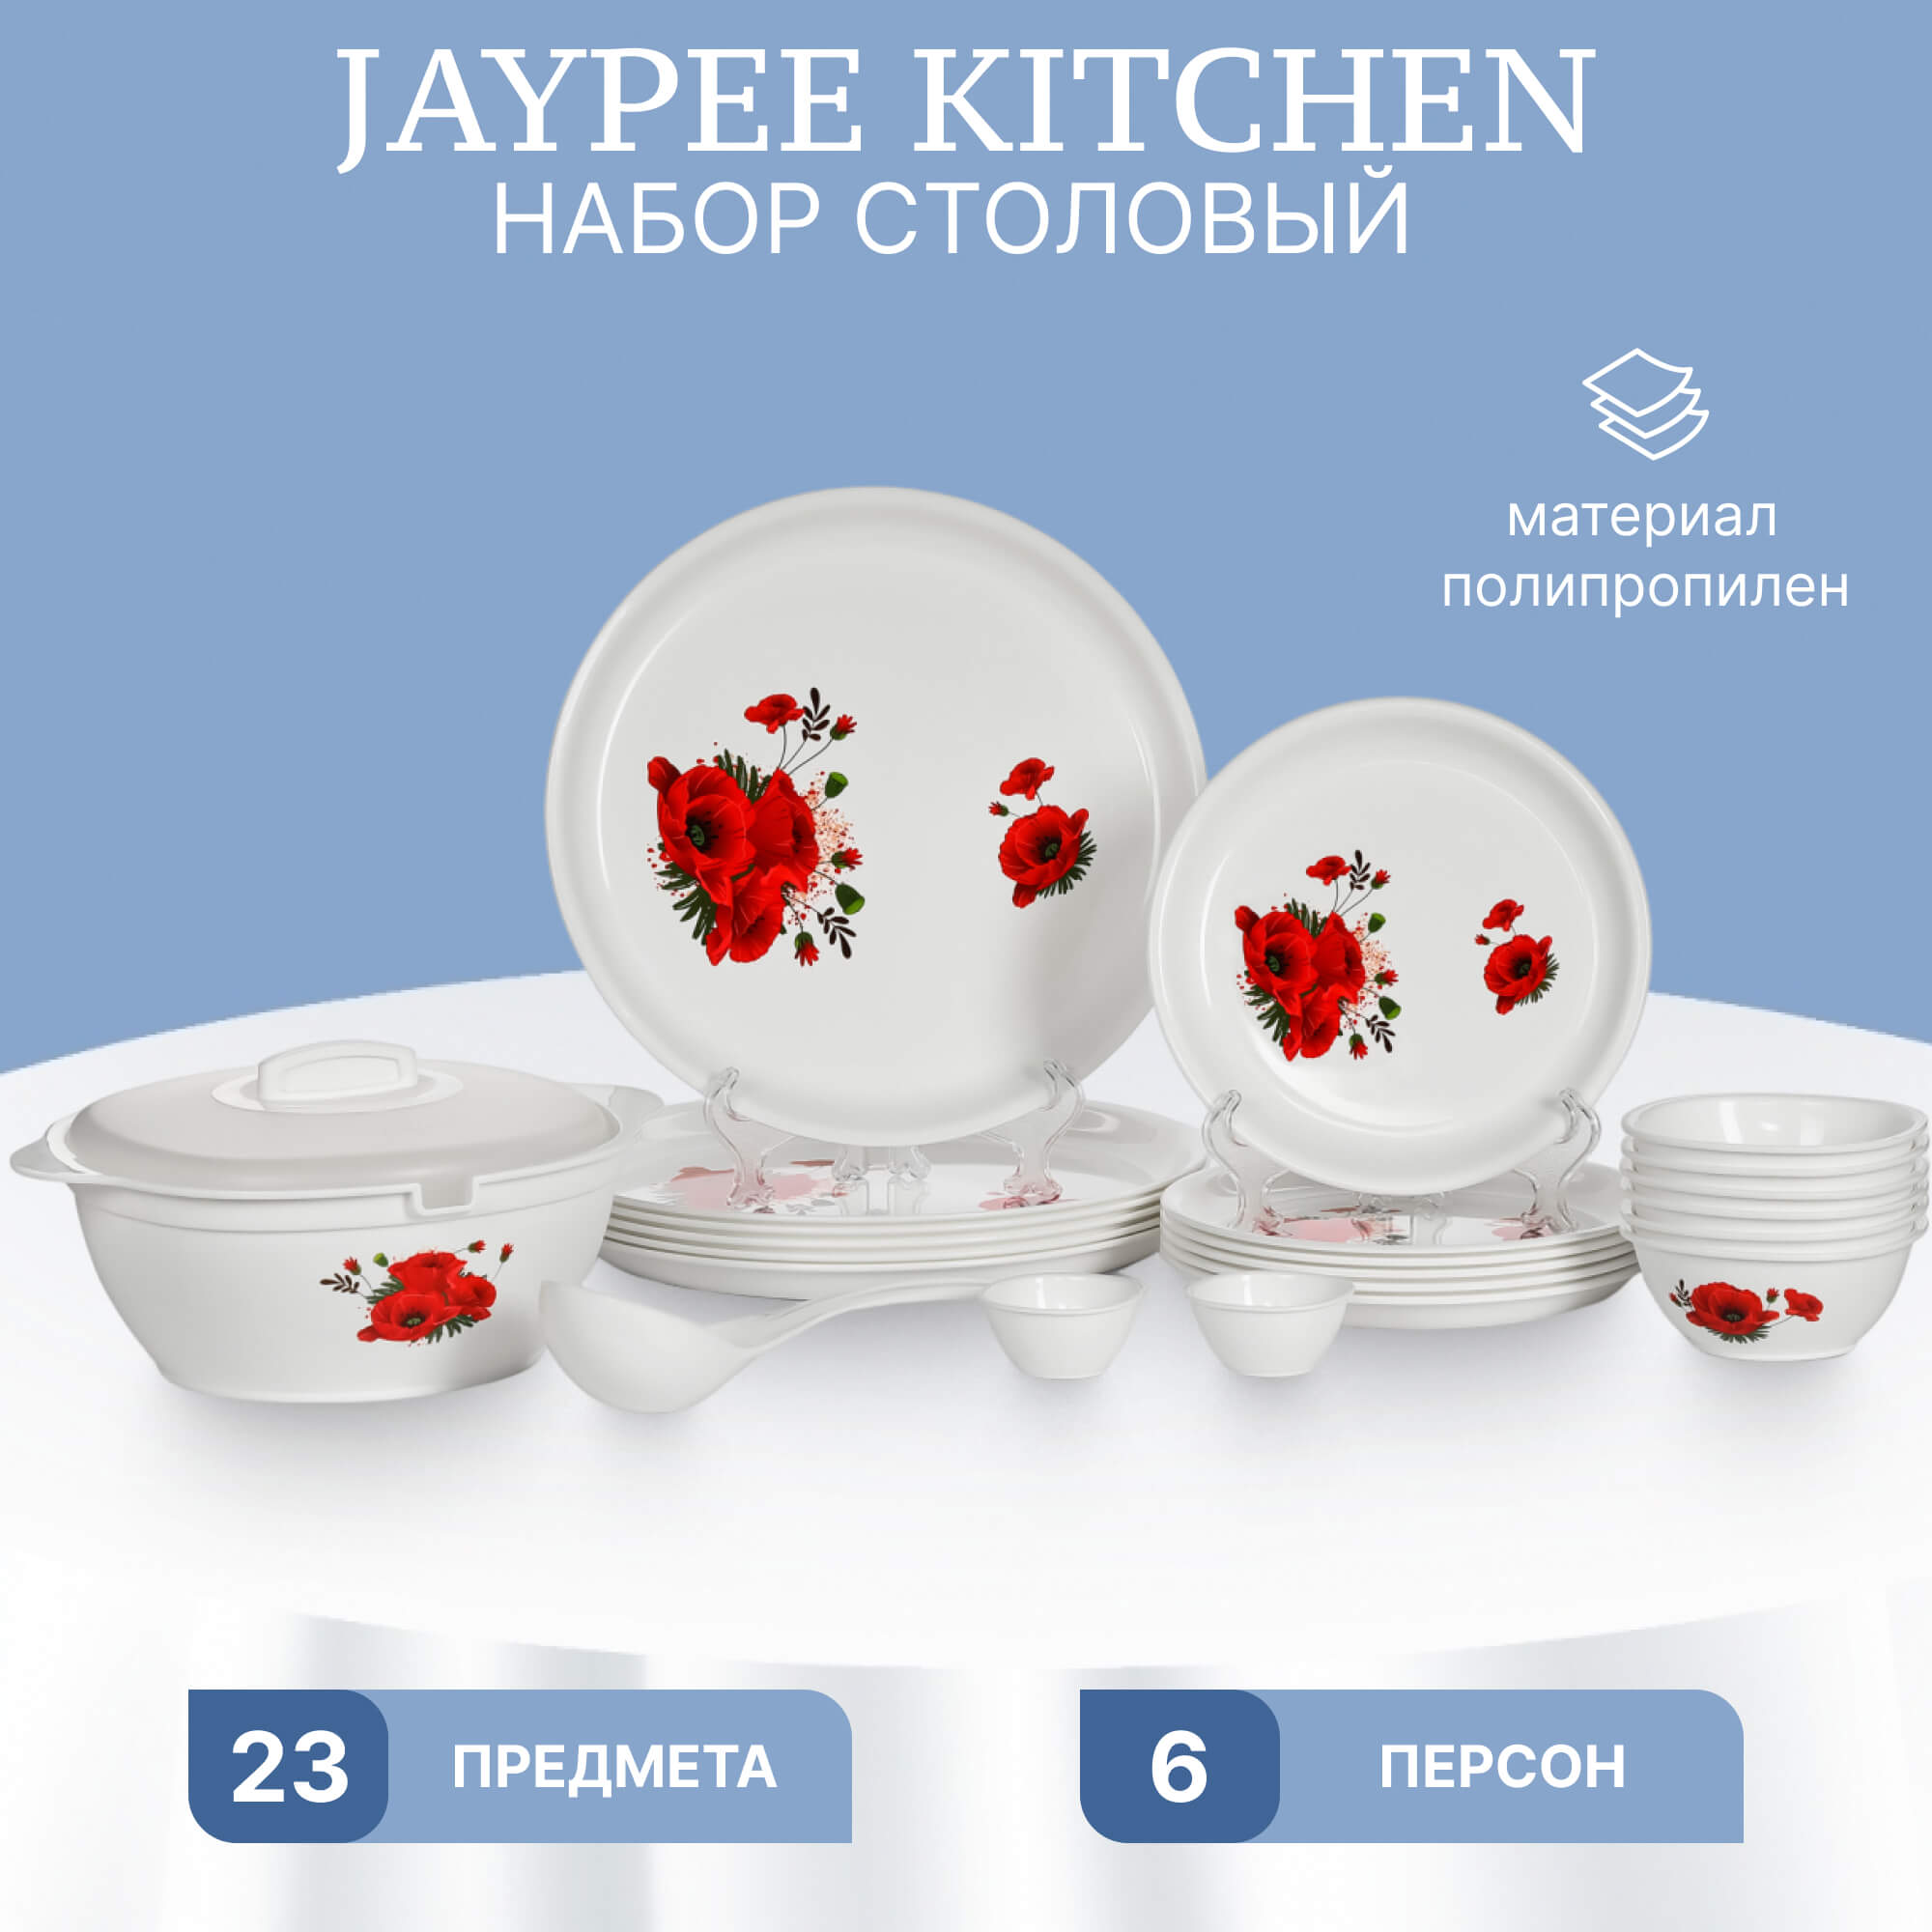 Набор столовый Jaypee Kitchen 23 предмета, цвет белый - фото 2